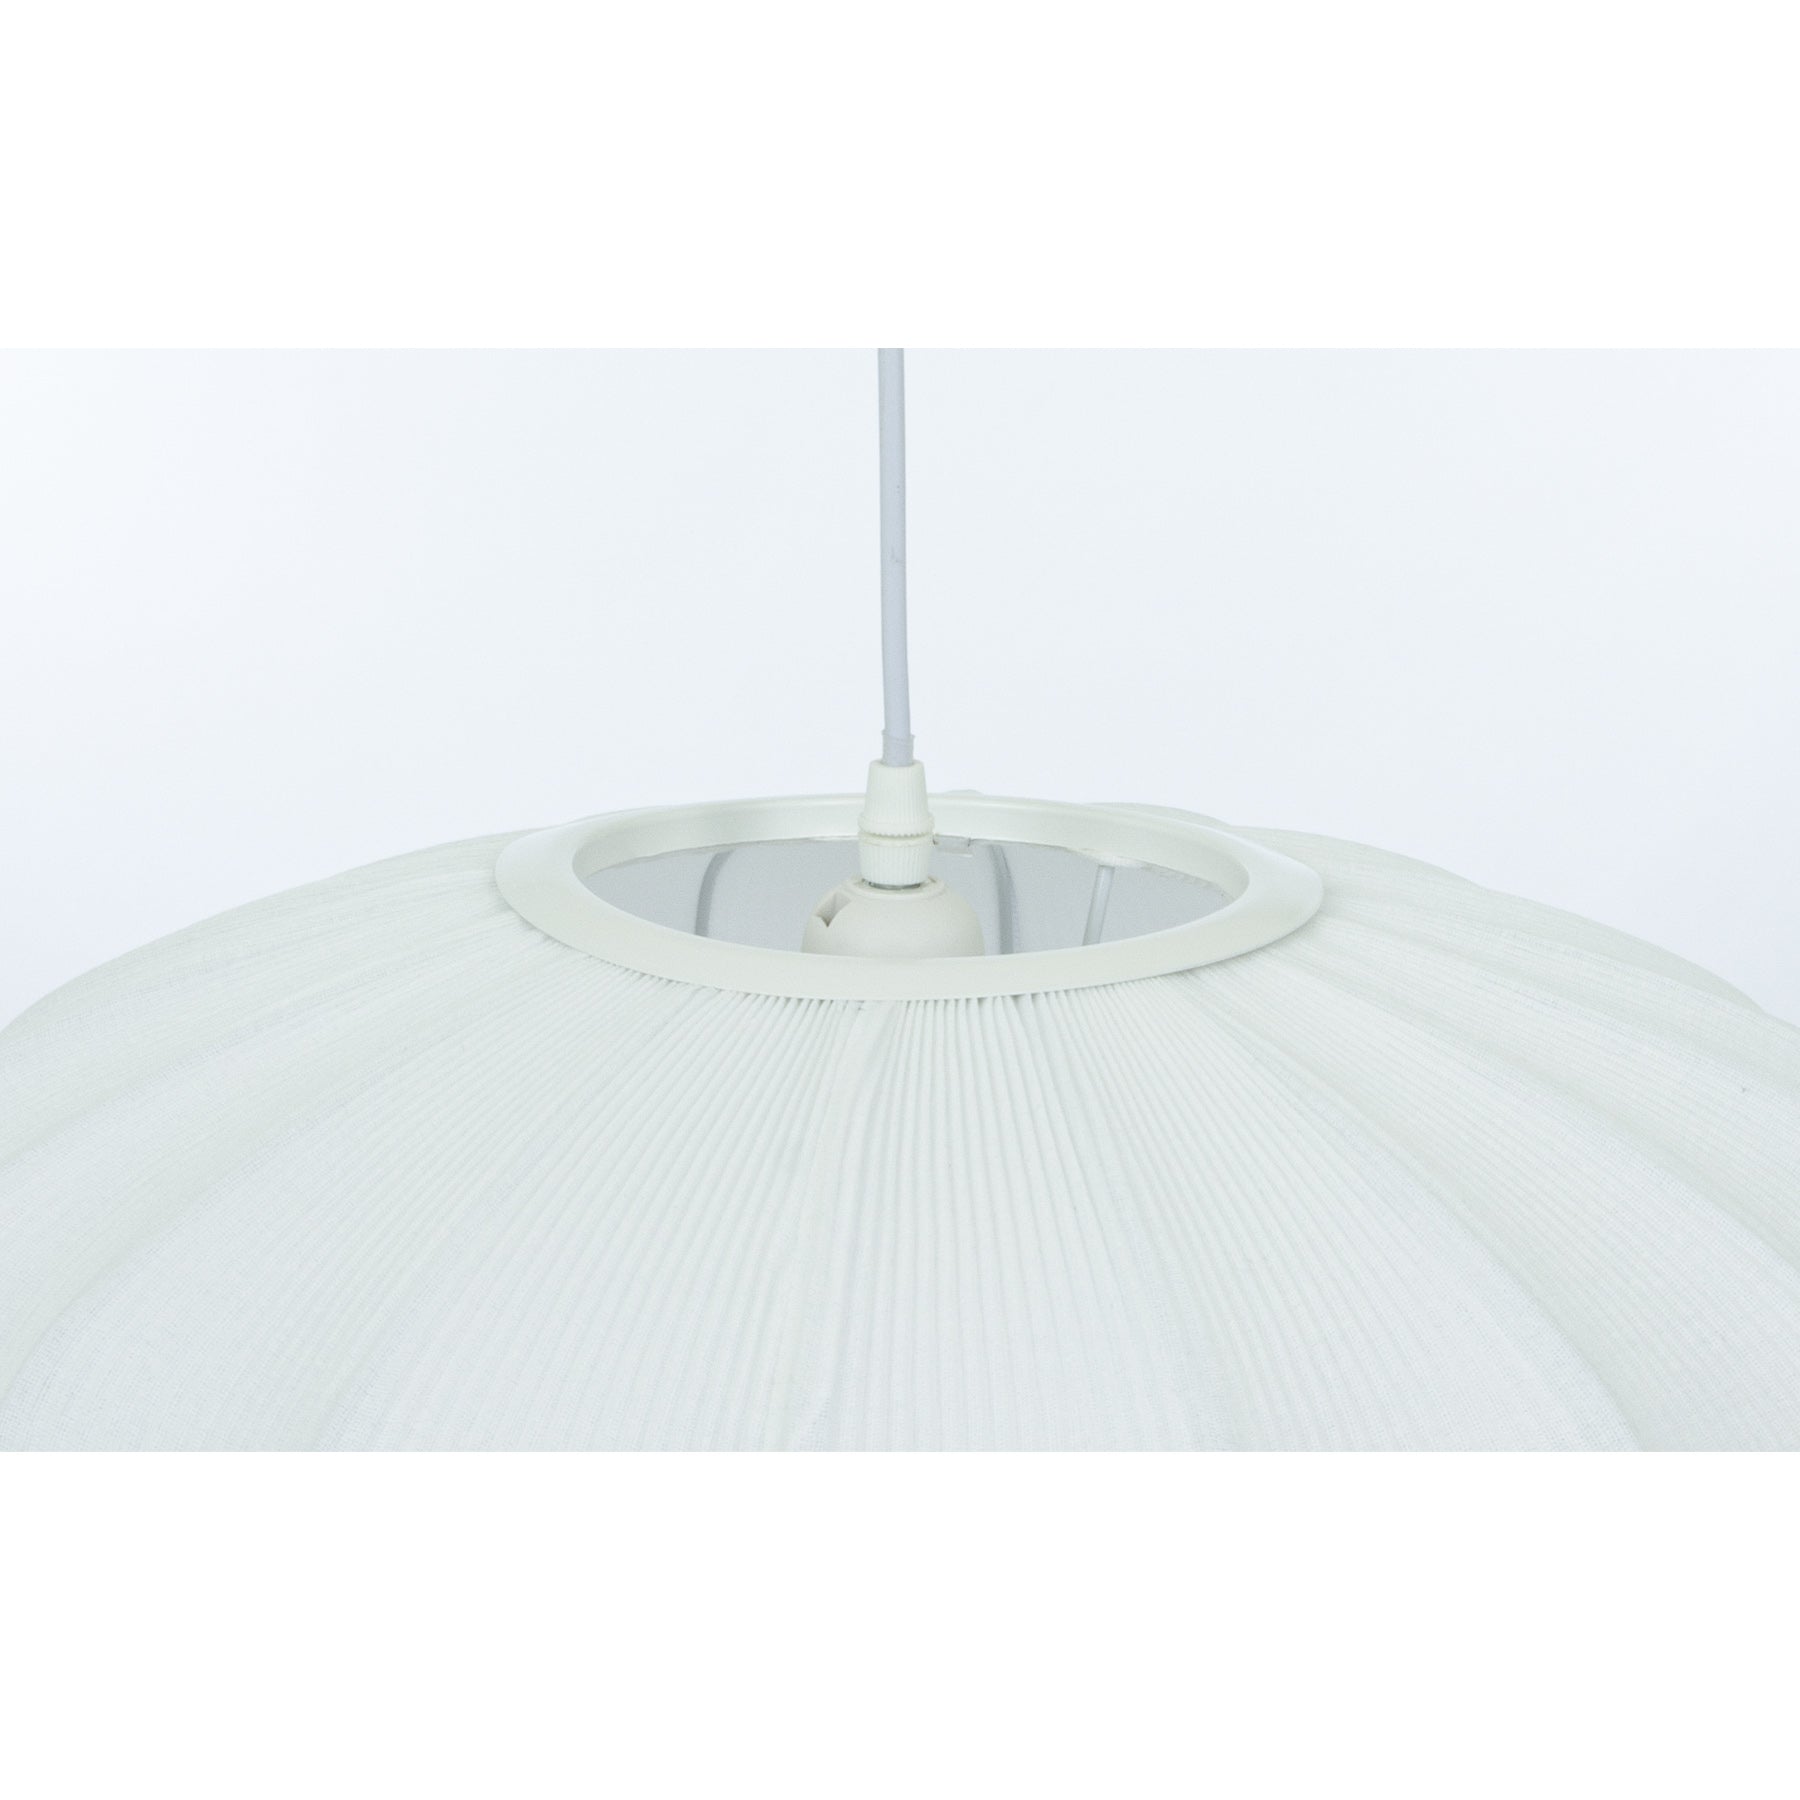 Opphenget til Mamsell taklampe pendel rund med diameter 45cm trukket i hvit tekstil rundt en ramme i hvit metall - Aneta belysning